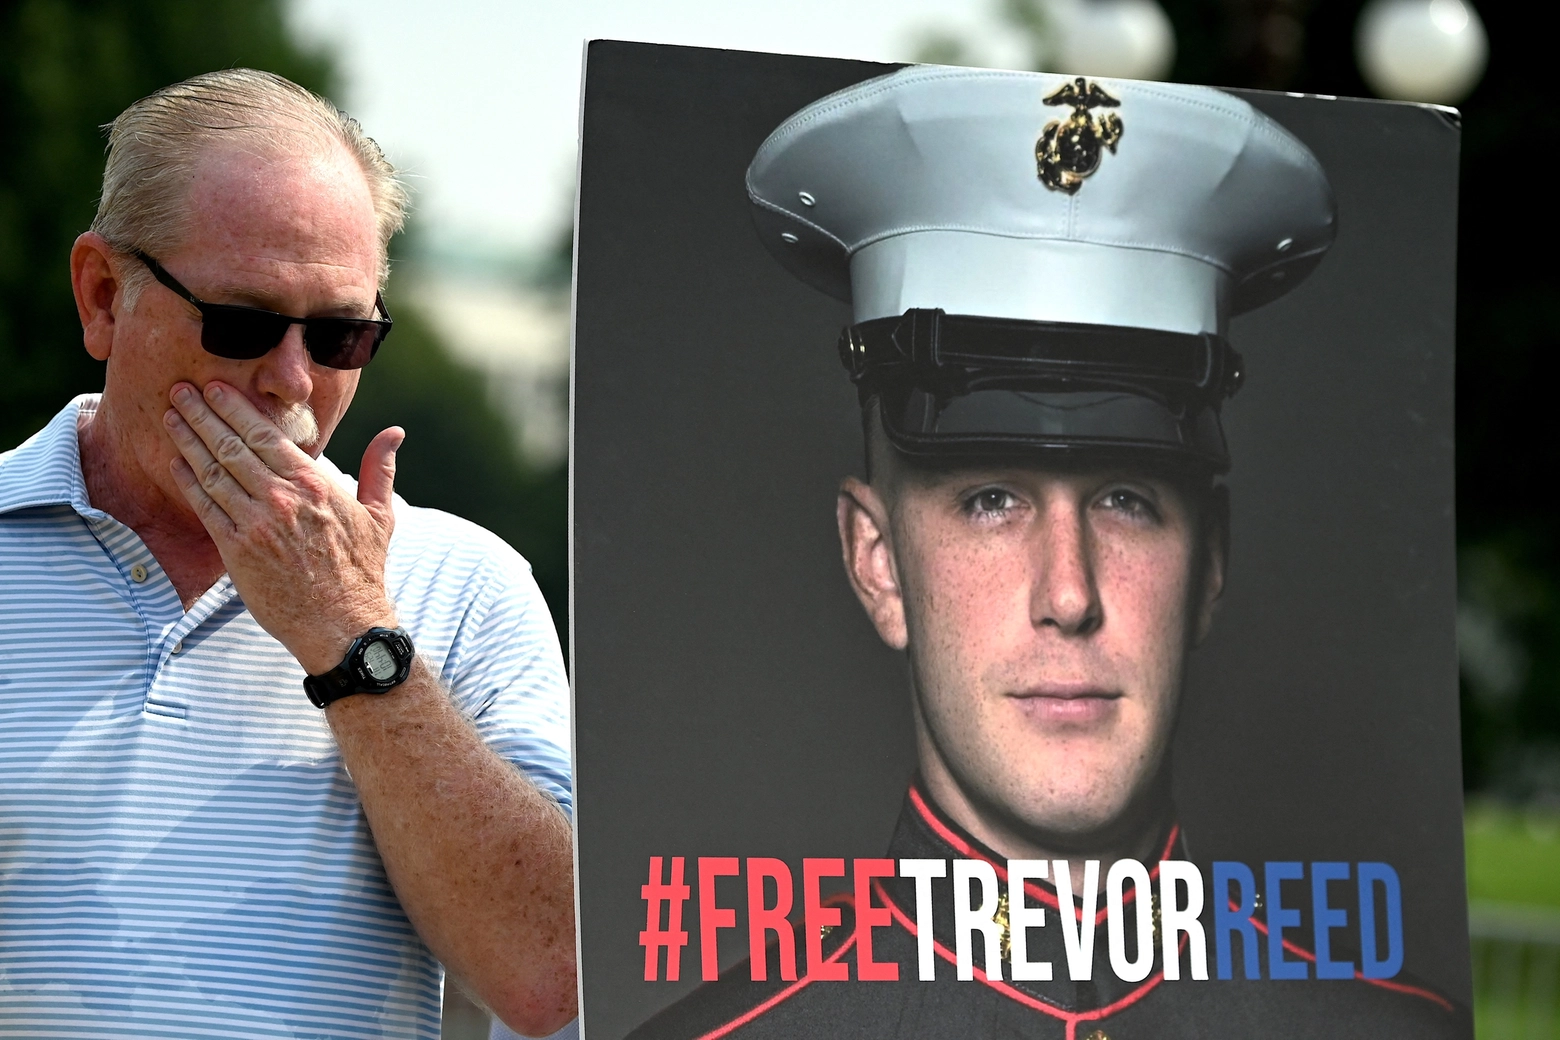 Trevor Reed, ex marine americano, è stato tre anni in carcere in Russia. Poi liberato durante uno scambio prigionieri con l'Ucraina (Afp)